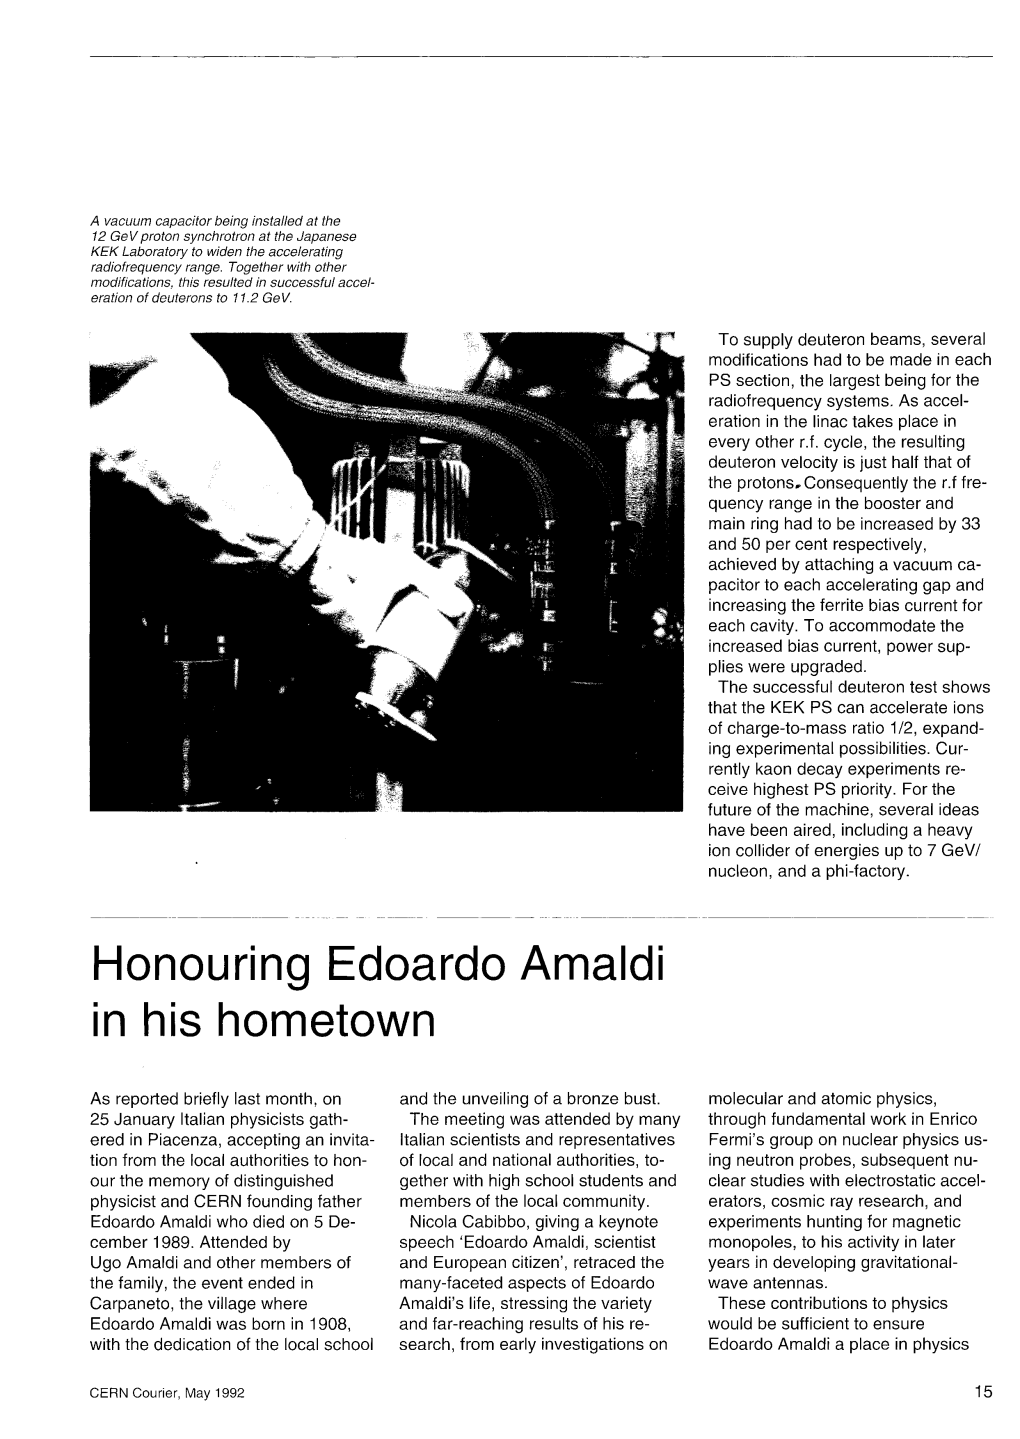 Honouring Edoardo Amaldi in His Hometown